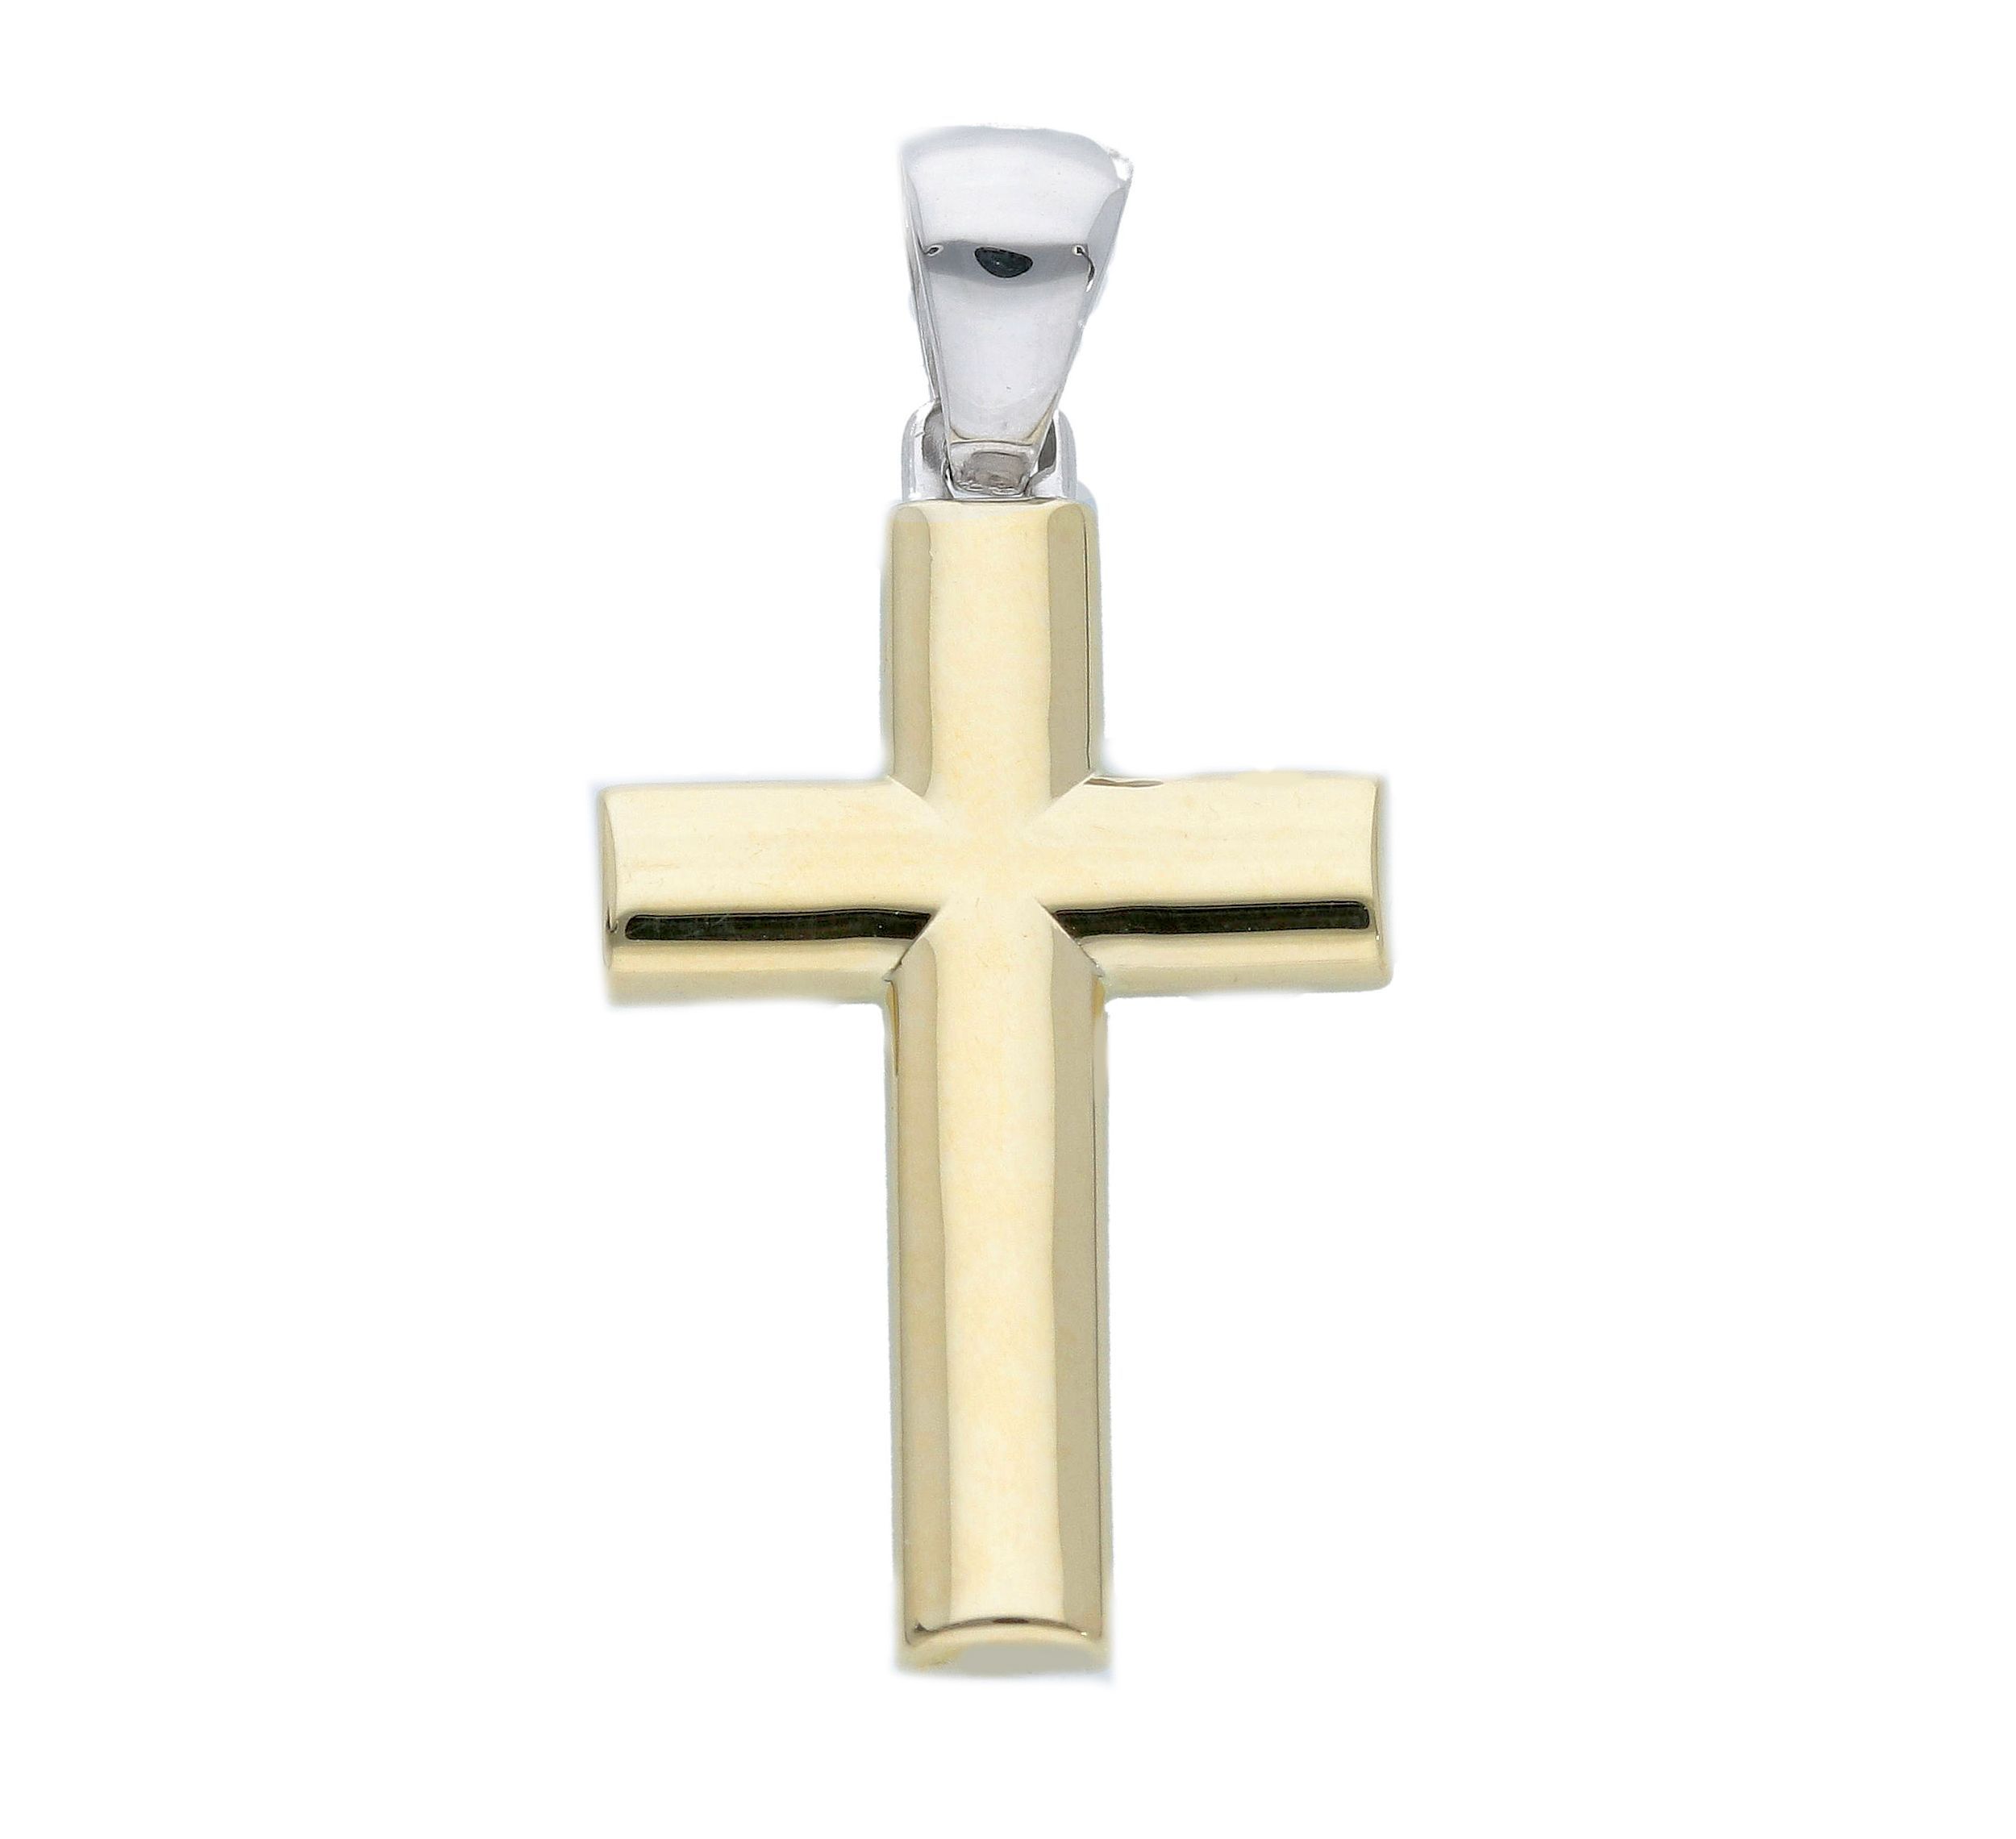 Croce in oro giallo e oro bianco k14 (code S231303)